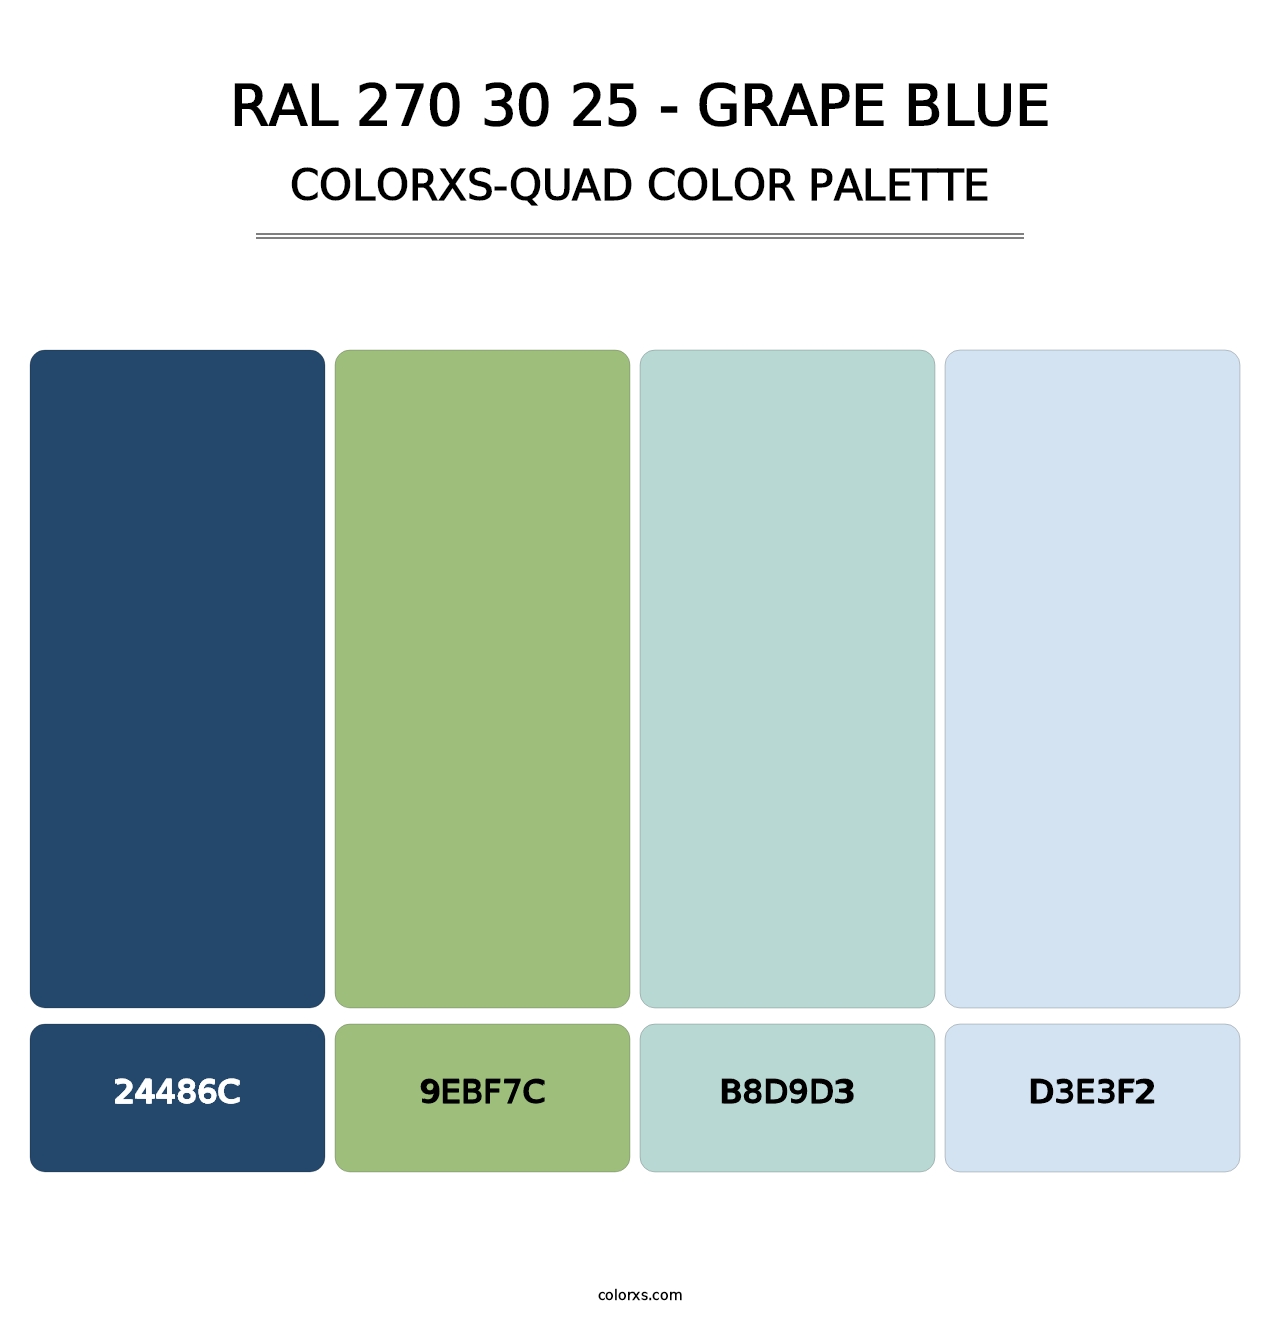 RAL 270 30 25 - Grape Blue - Colorxs Quad Palette